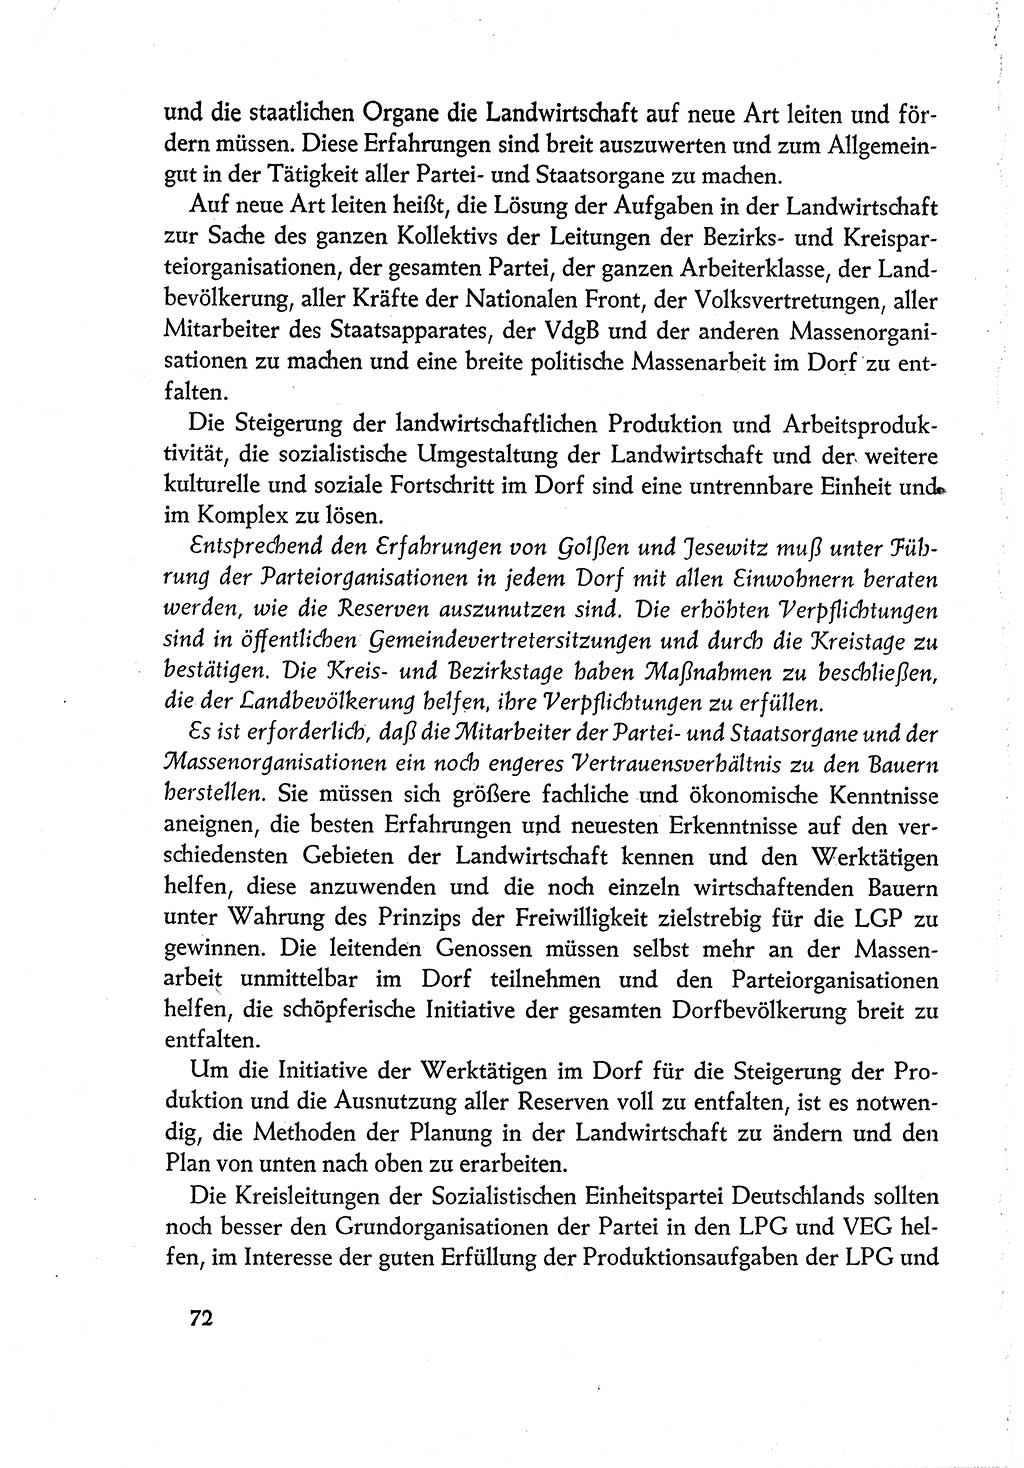 Dokumente der Sozialistischen Einheitspartei Deutschlands (SED) [Deutsche Demokratische Republik (DDR)] 1960-1961, Seite 72 (Dok. SED DDR 1960-1961, S. 72)